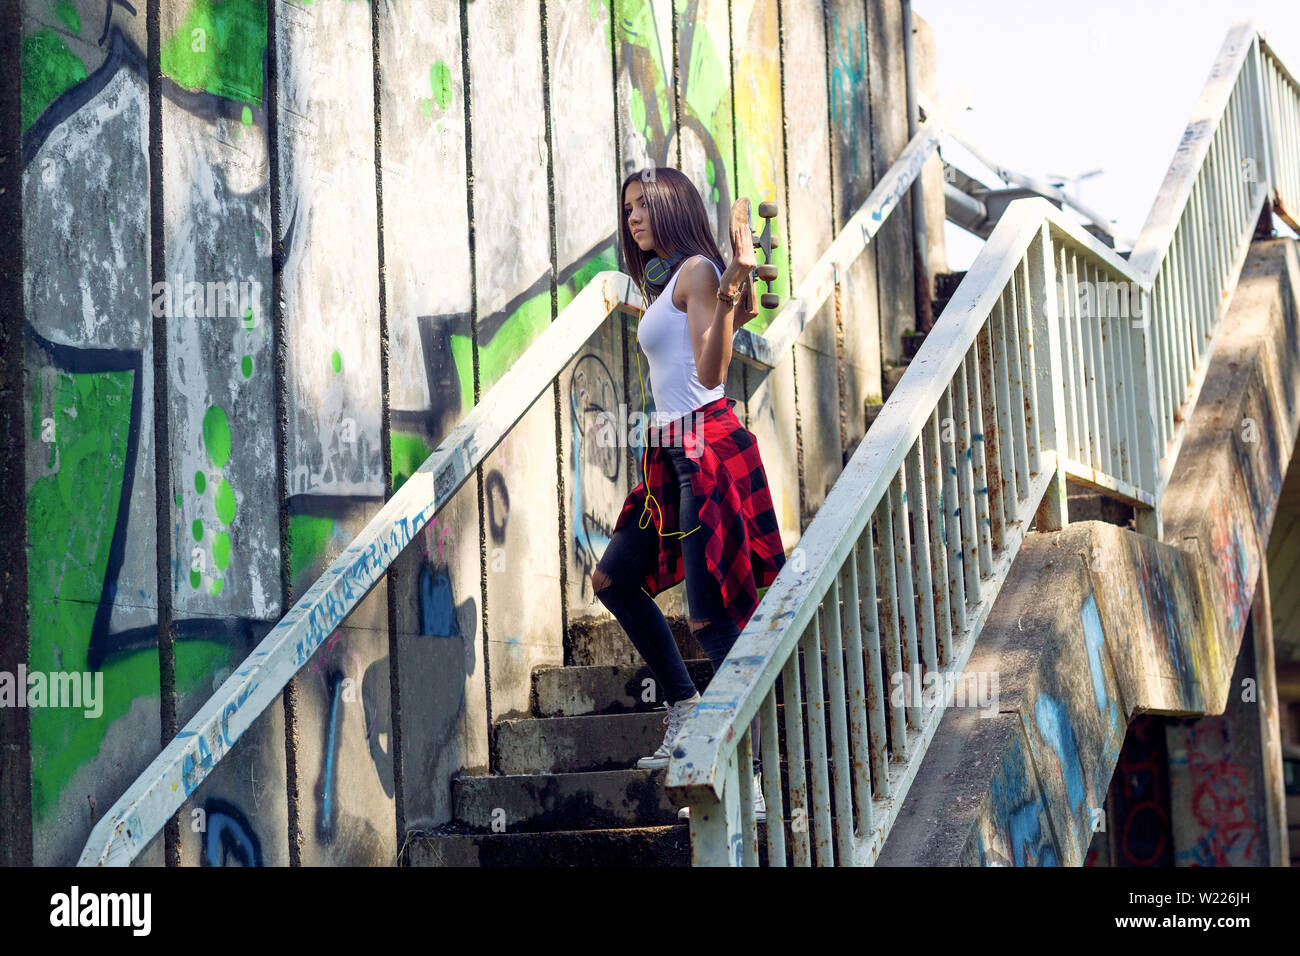 Jeune fille woman holding skateboard en plein air, mode de vie urbain. Banque D'Images